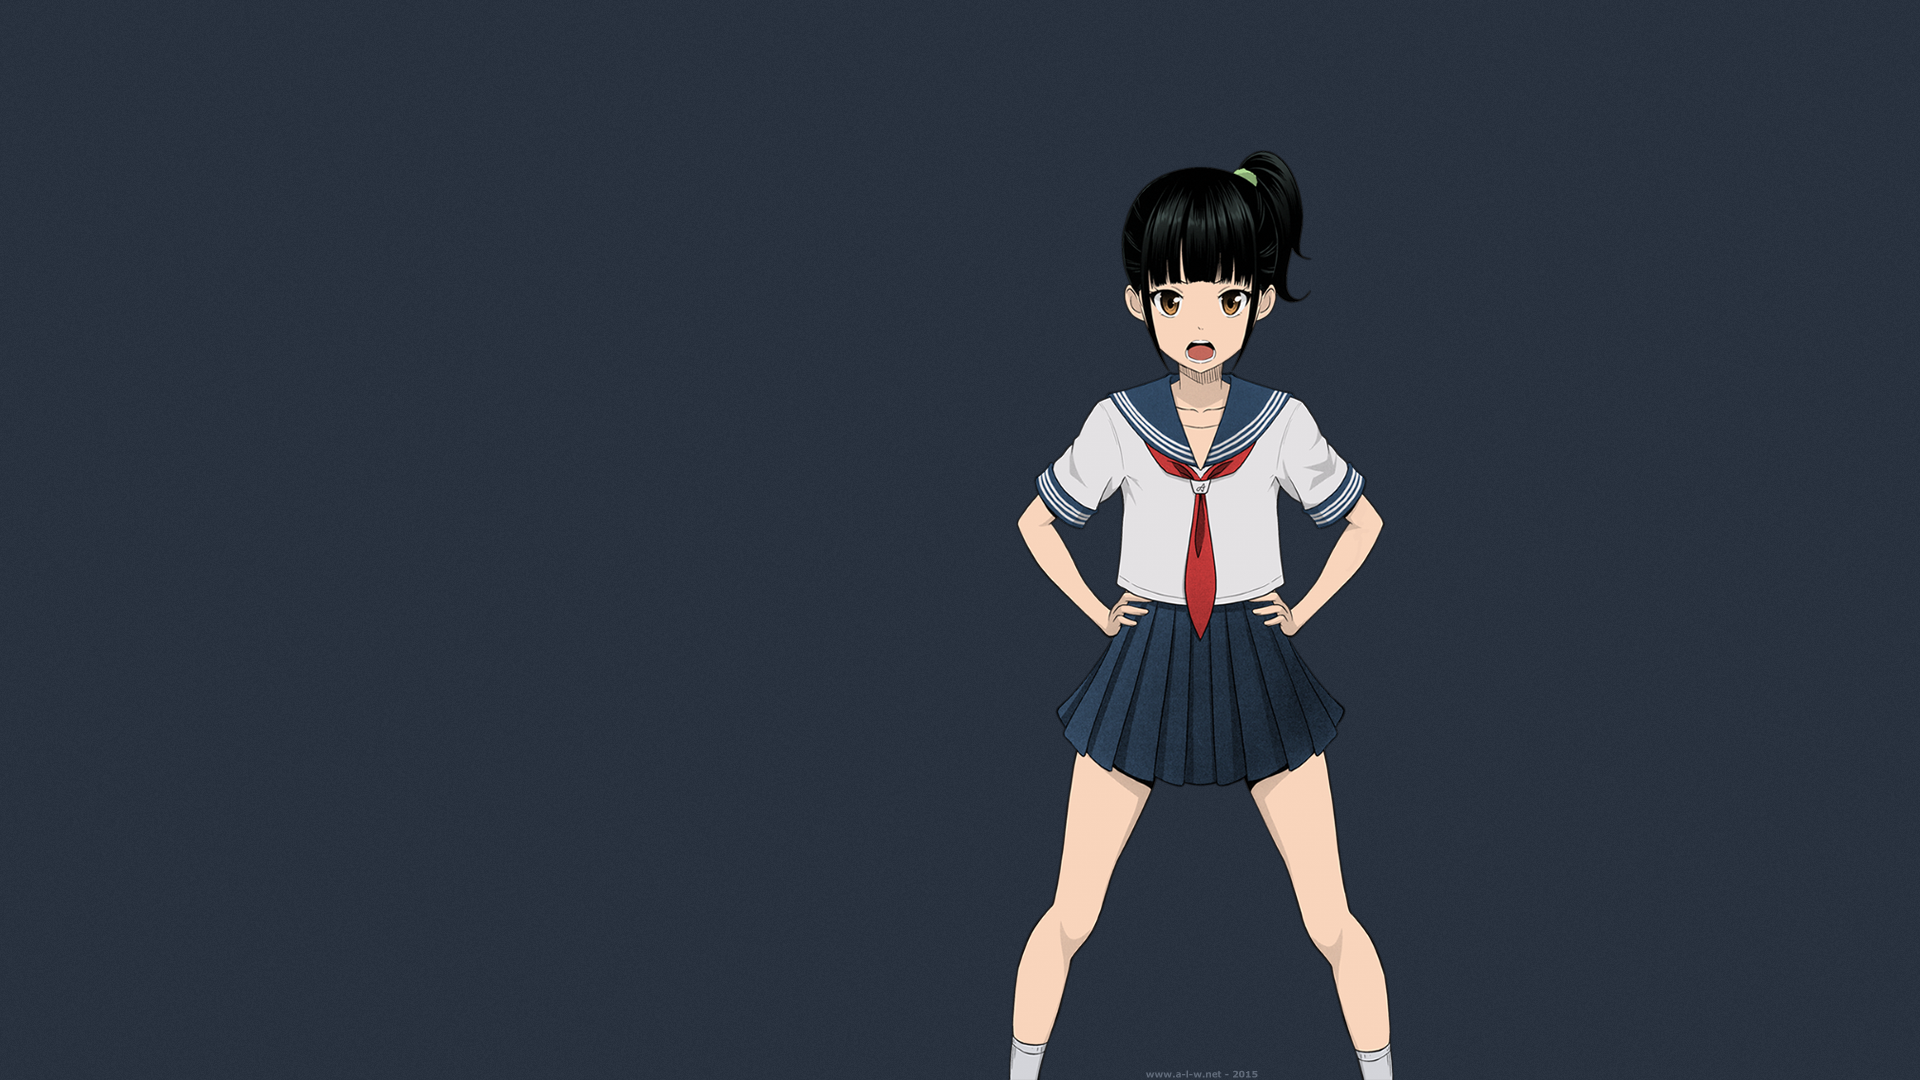 Anime 1920x1080 school uniform schoolgirl anime girls manga tsundere short hair anime miniskirt hands on hips black hair legs